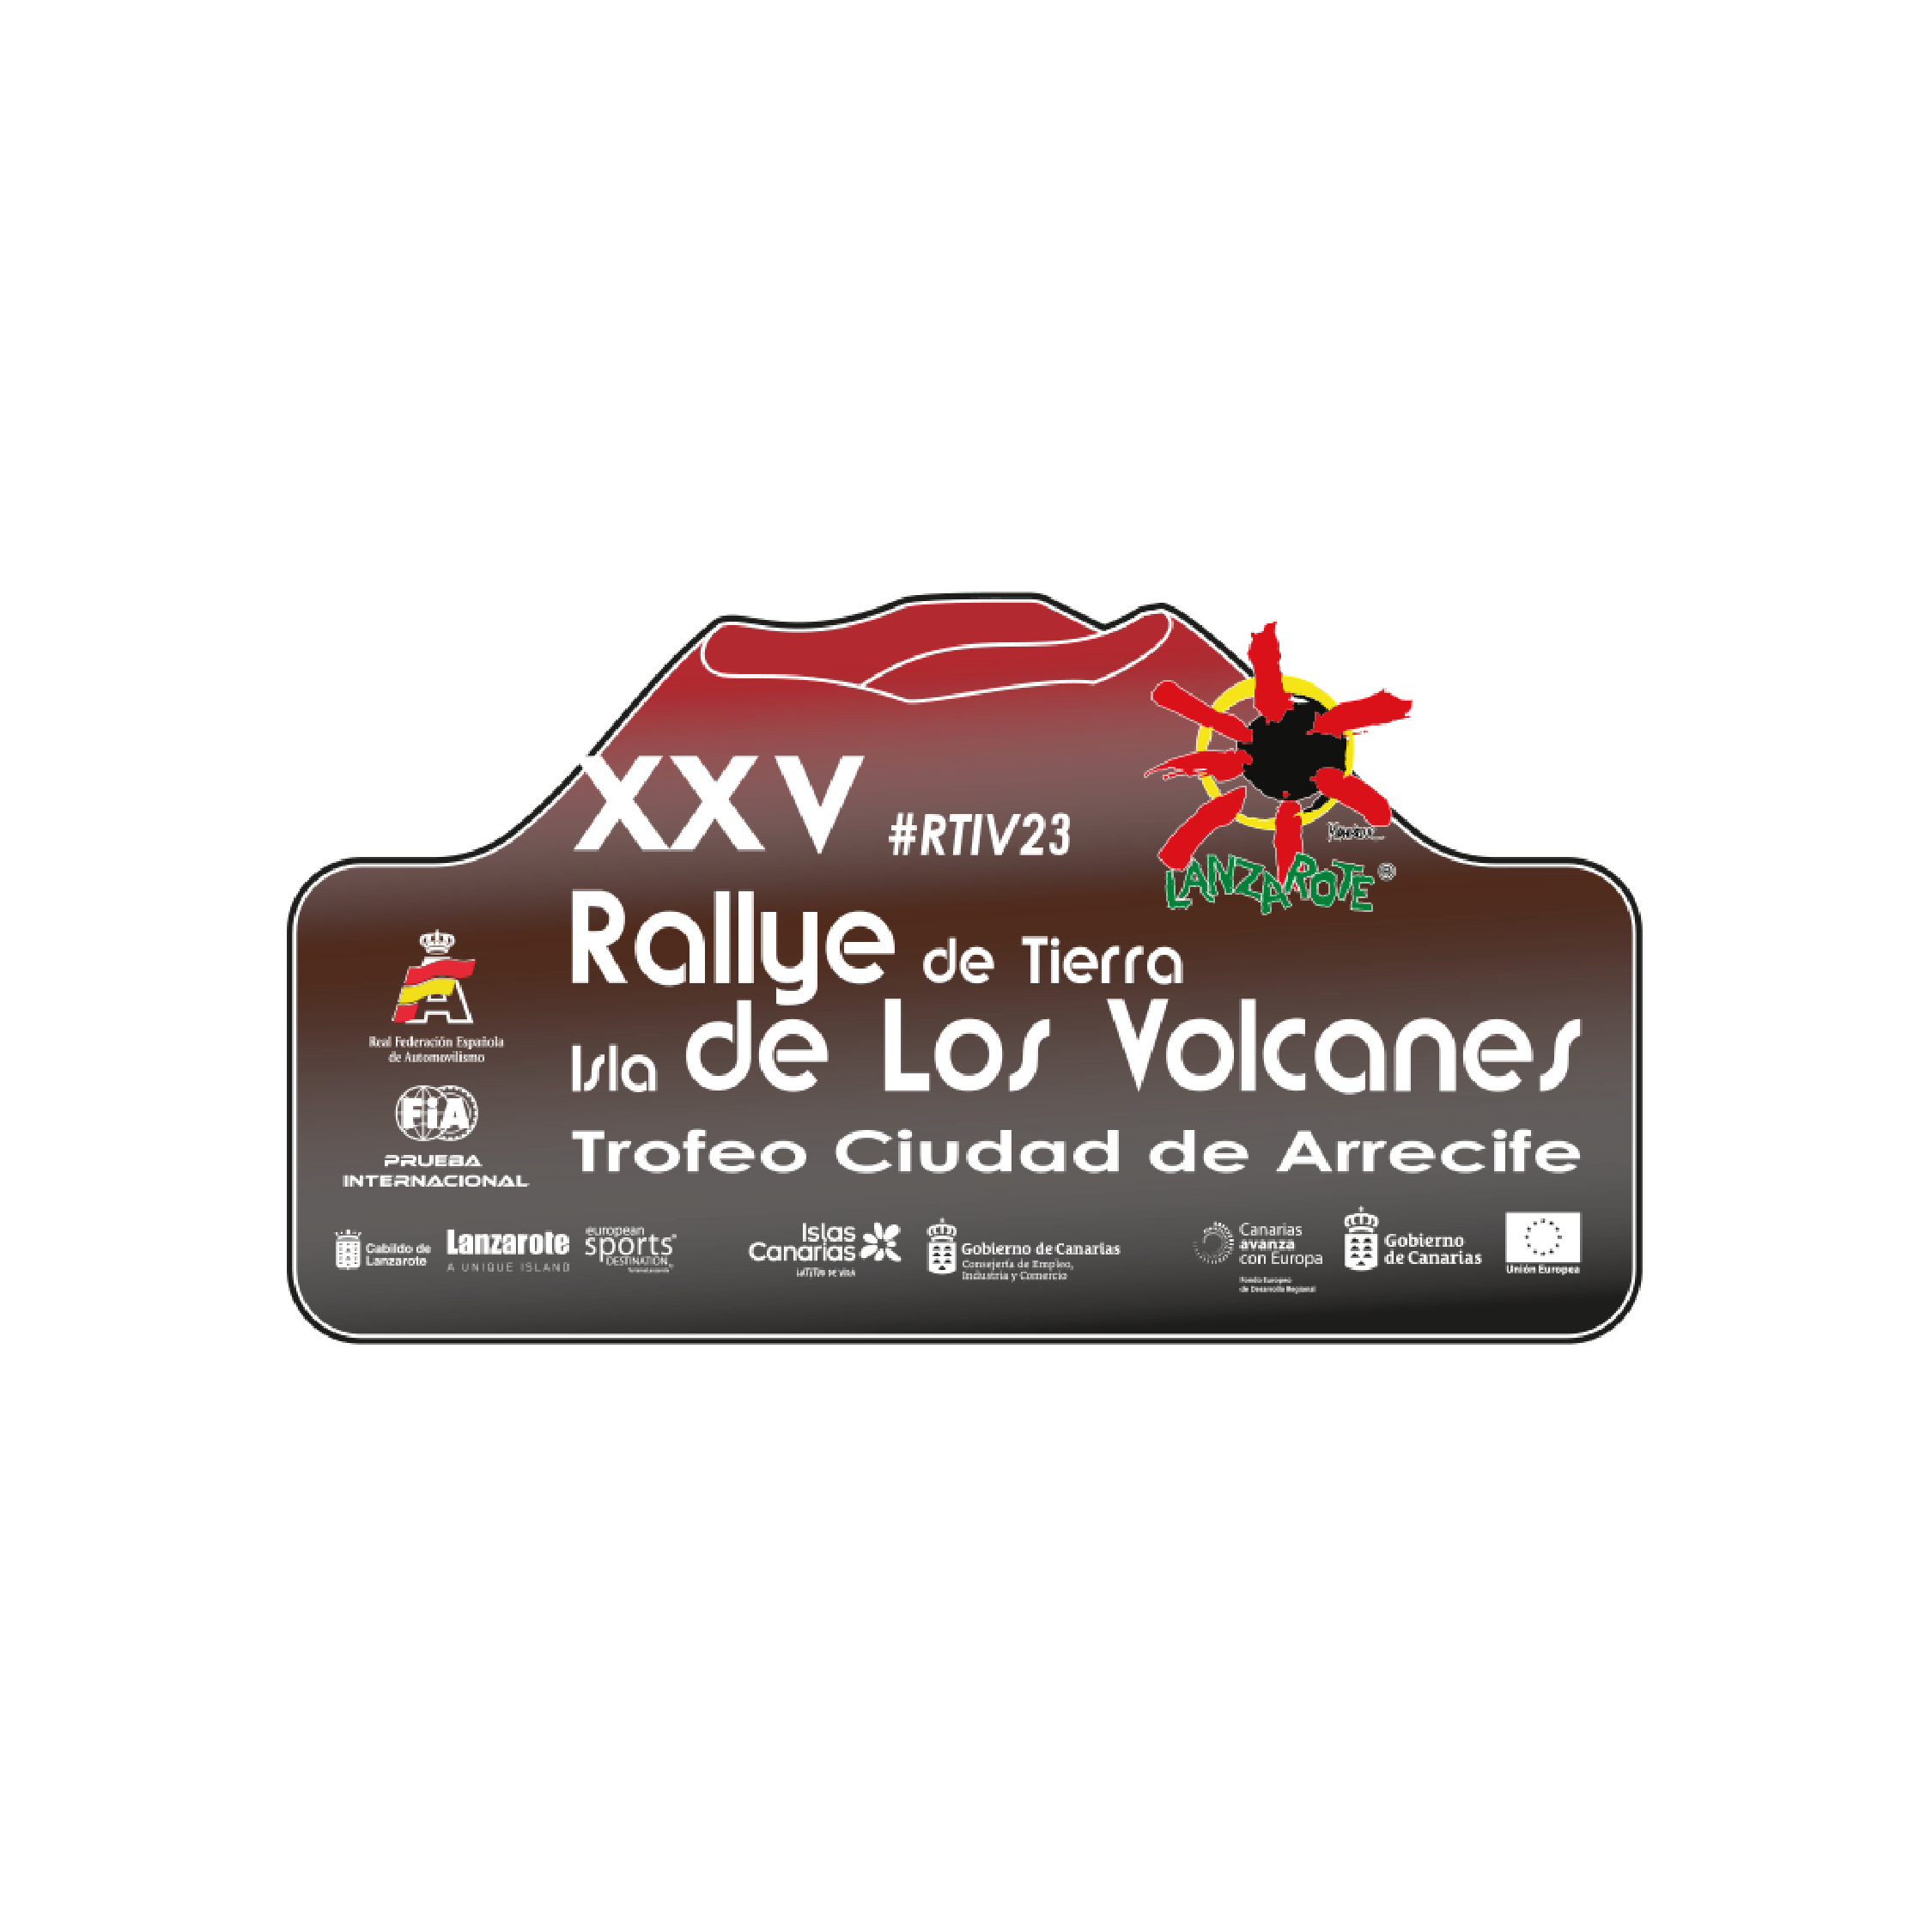 El 25º Rallye Isla de Los Volcanes: un evento estelar que une tradición y talento internacional